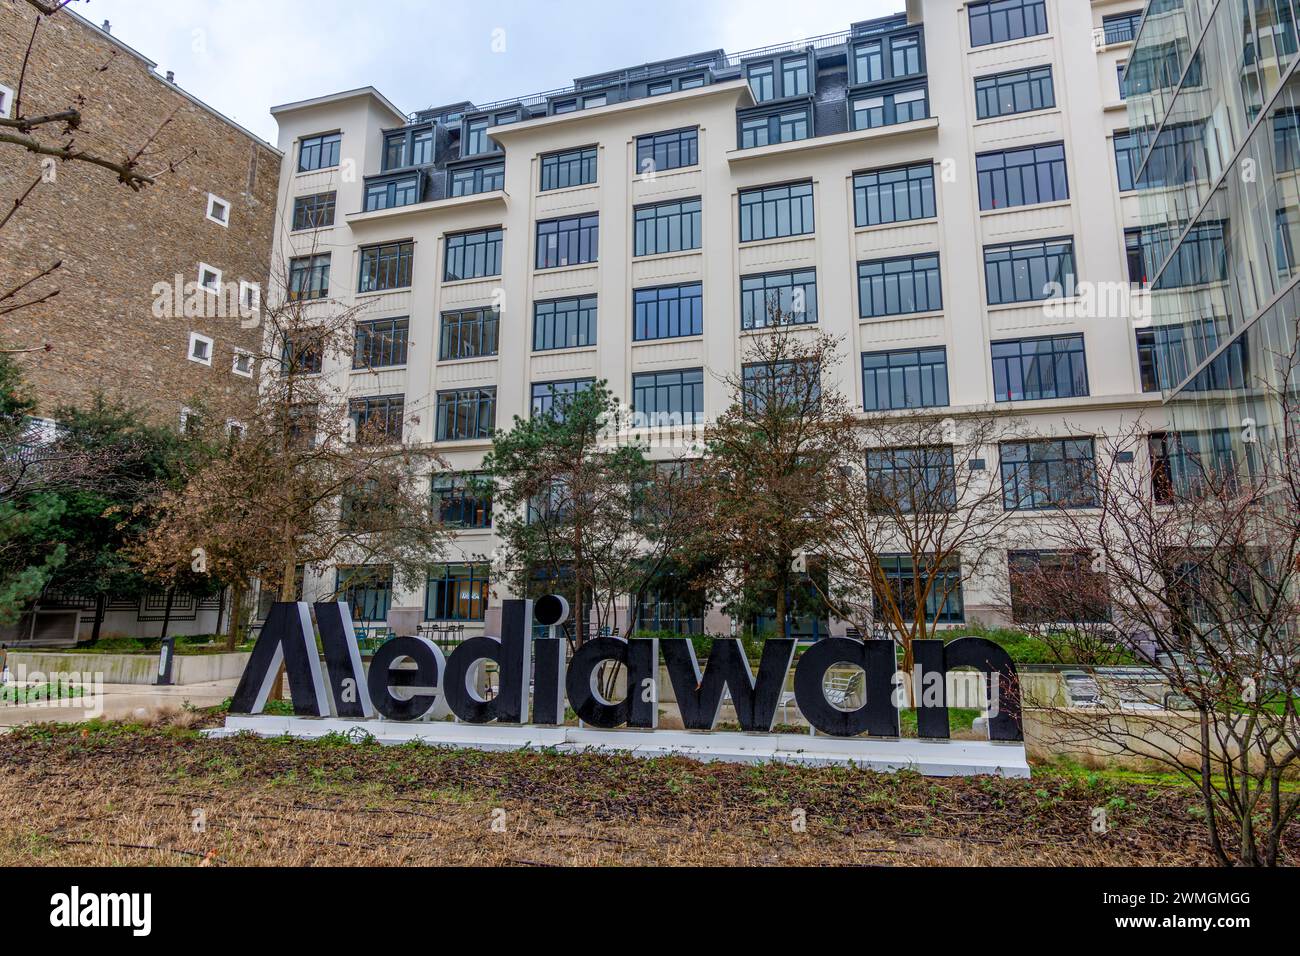 Vue extérieure du quartier général du Mediawan. Mediawan est un groupe français spécialisé dans la production et la distribution de contenus audiovisuels Banque D'Images